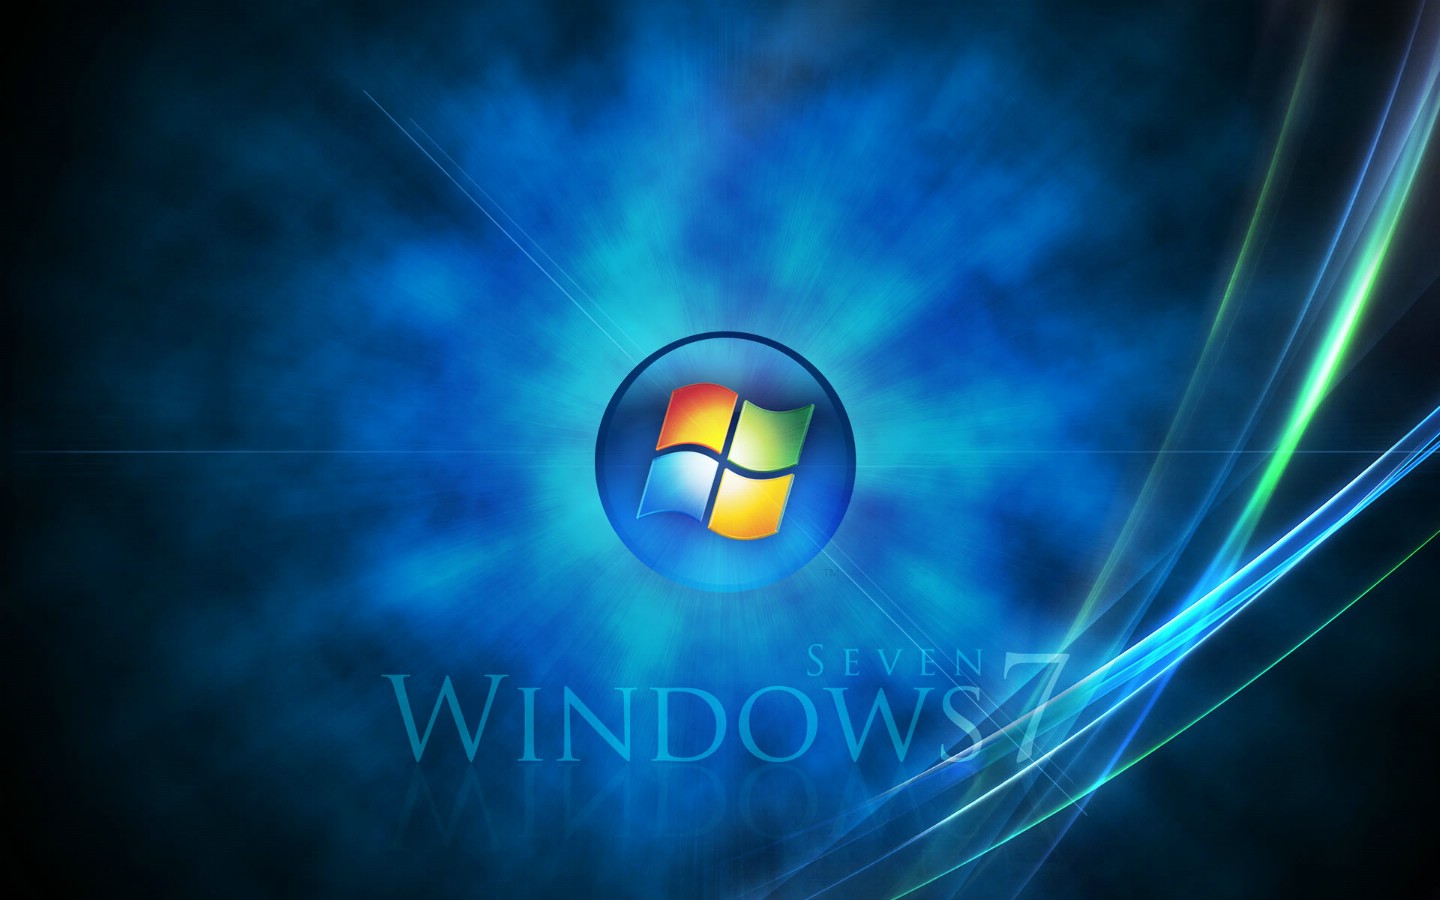 壁纸1440x900Windows7 4 13壁纸 Windows7壁纸 Windows7图片 Windows7素材 系统壁纸 系统图库 系统图片素材桌面壁纸